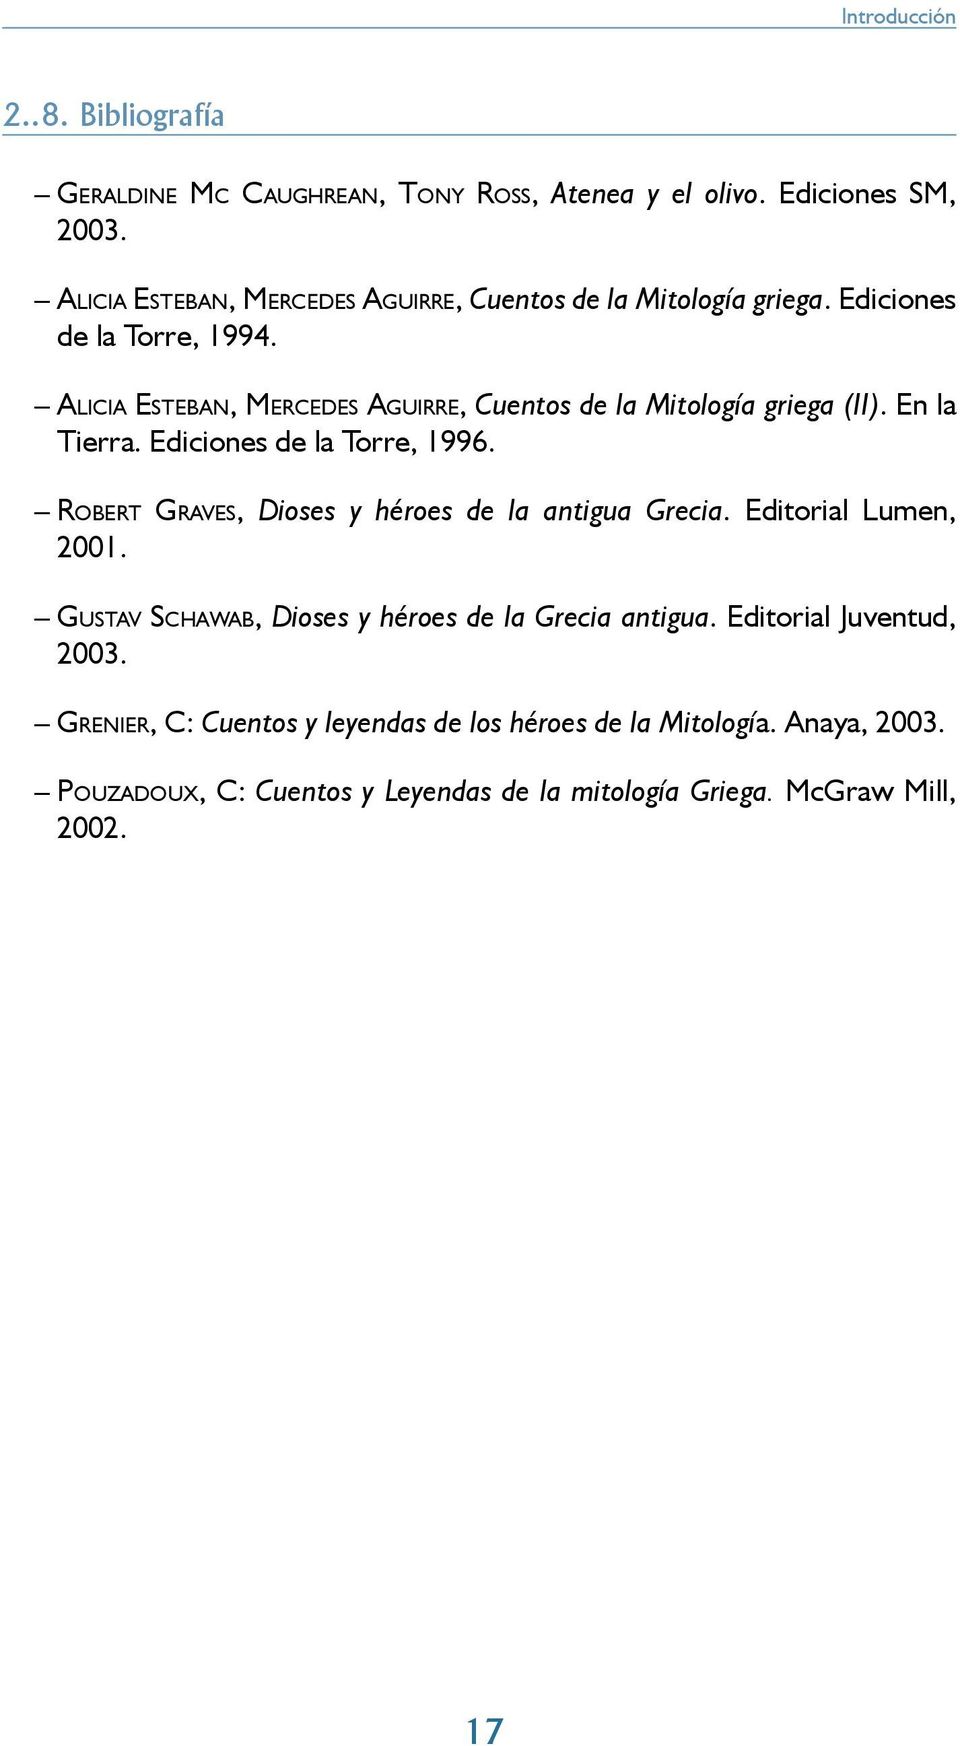 ALICIA ESTEBAN, MERCEDES AGUIRRE, Cuentos de la Mitología griega (II). En la Tierra. Ediciones de la Torre, 1996.